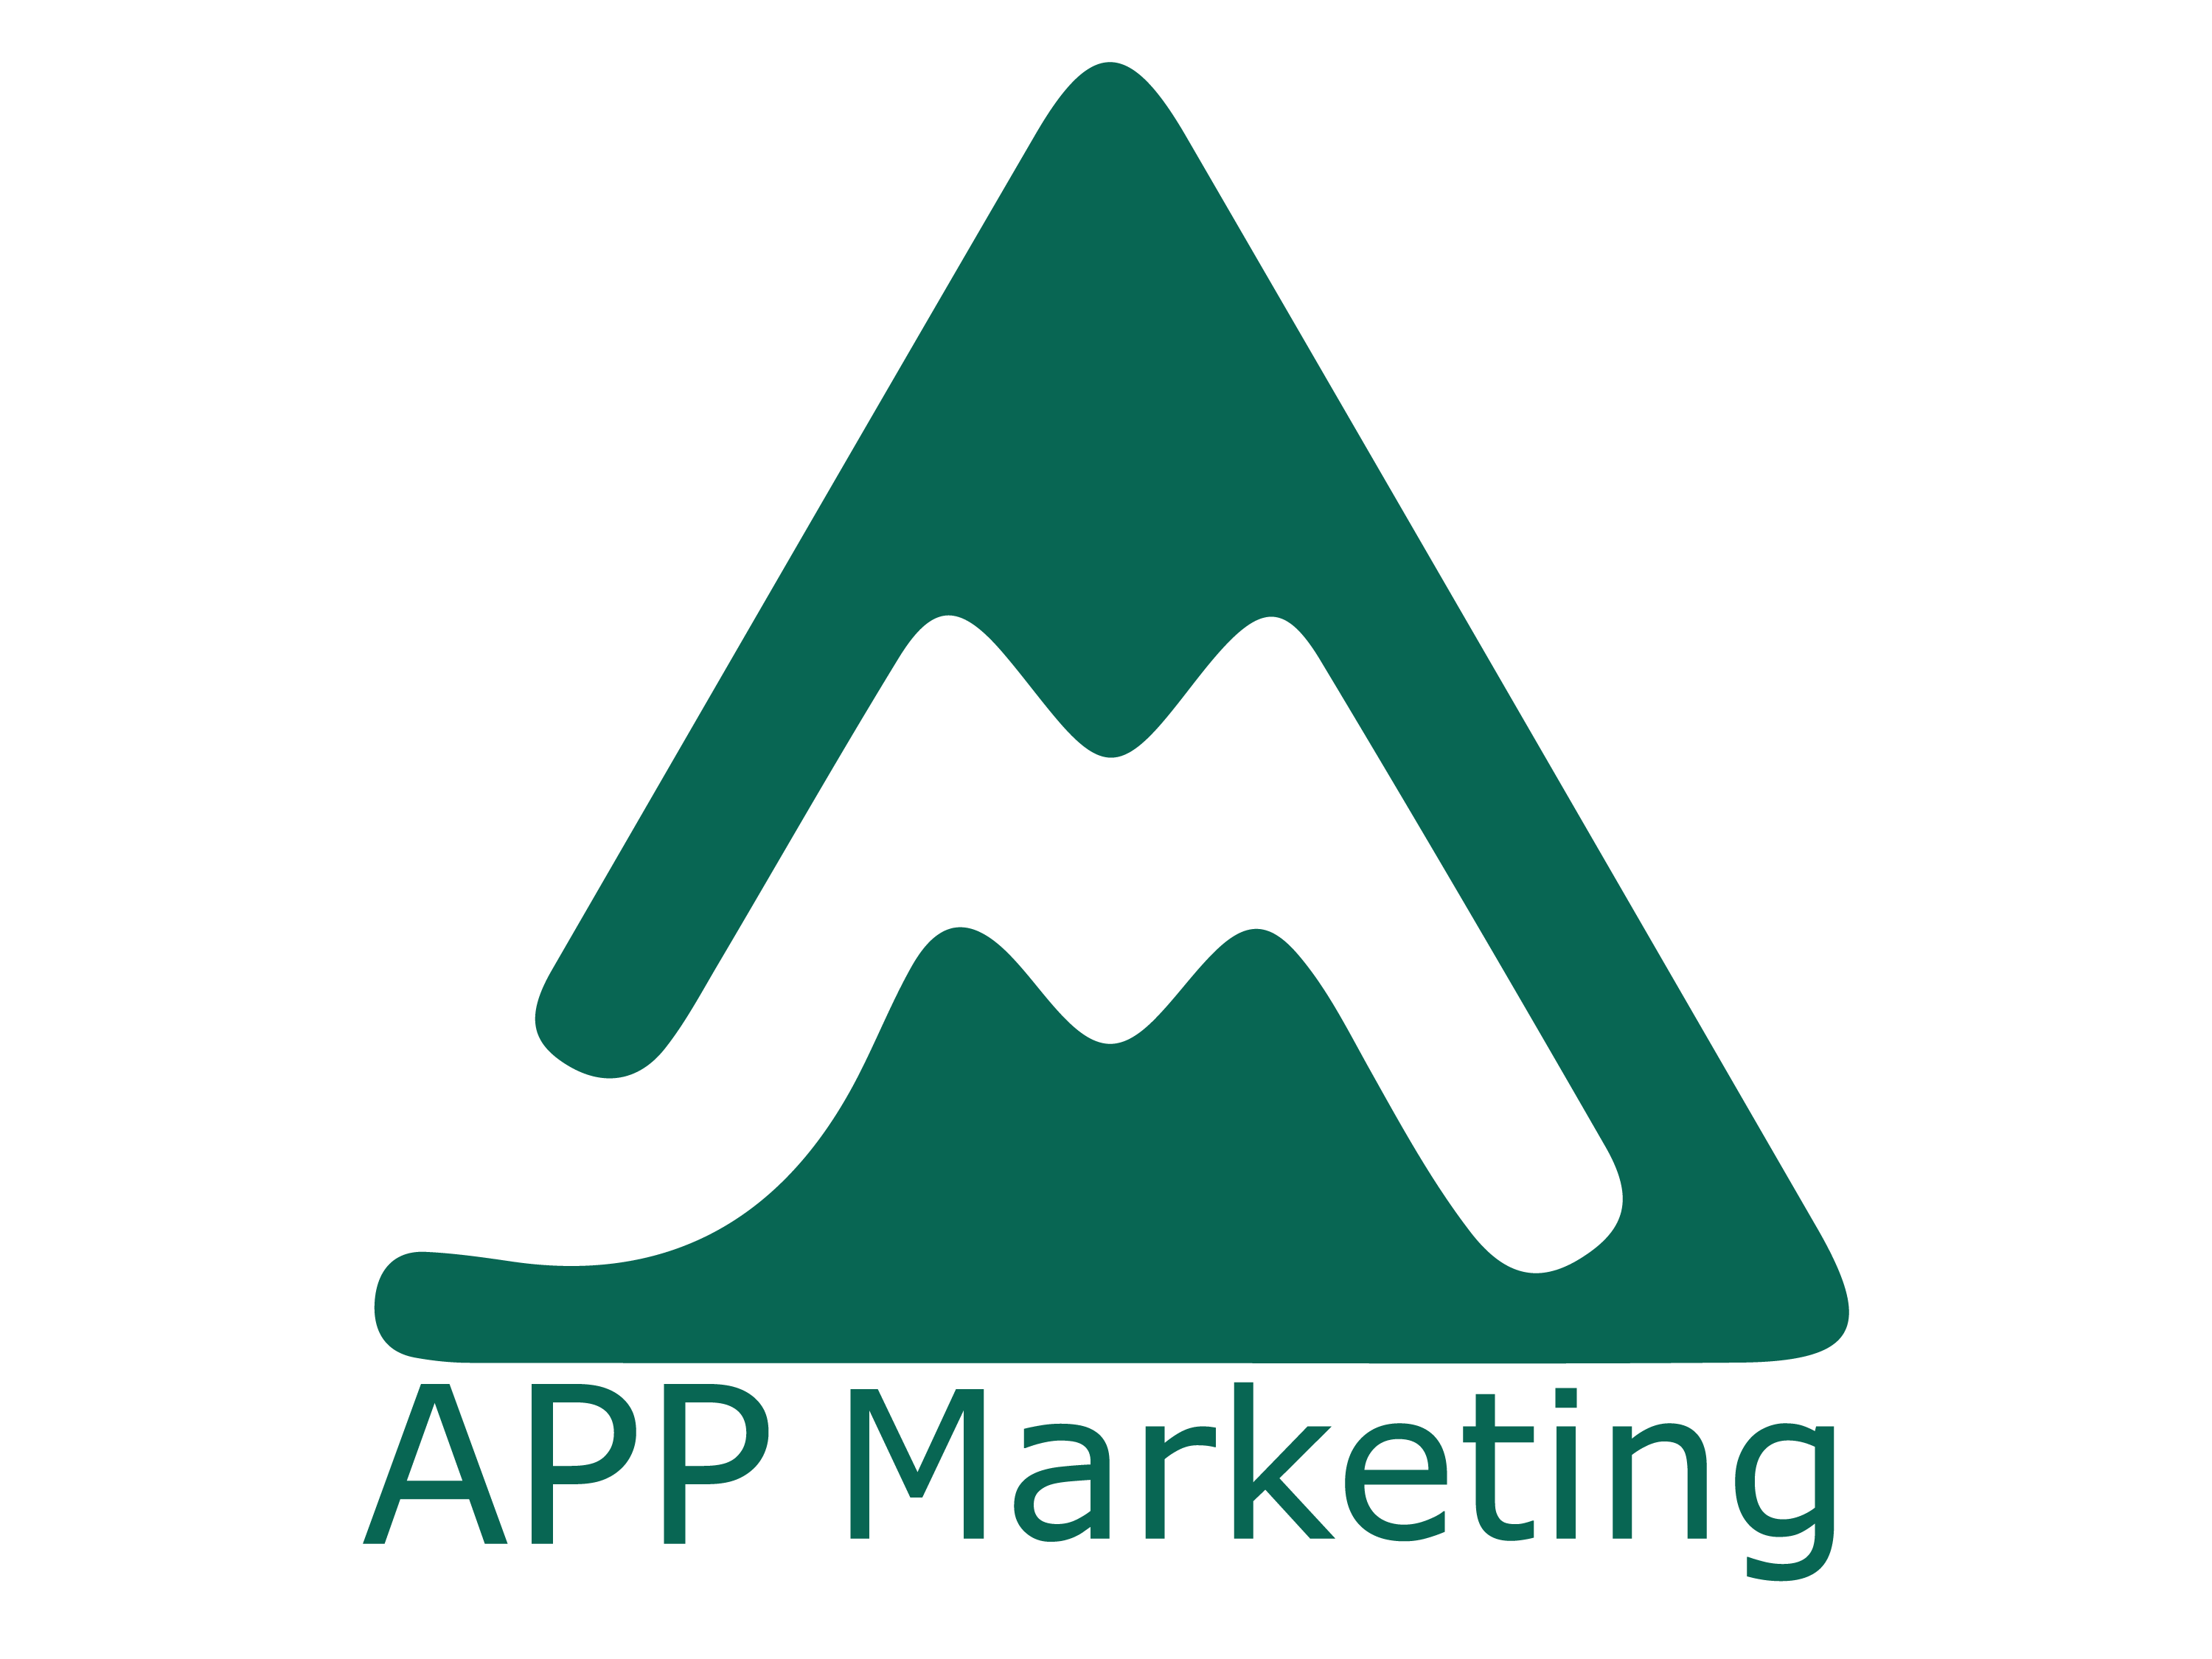 APP Marketing Solutions